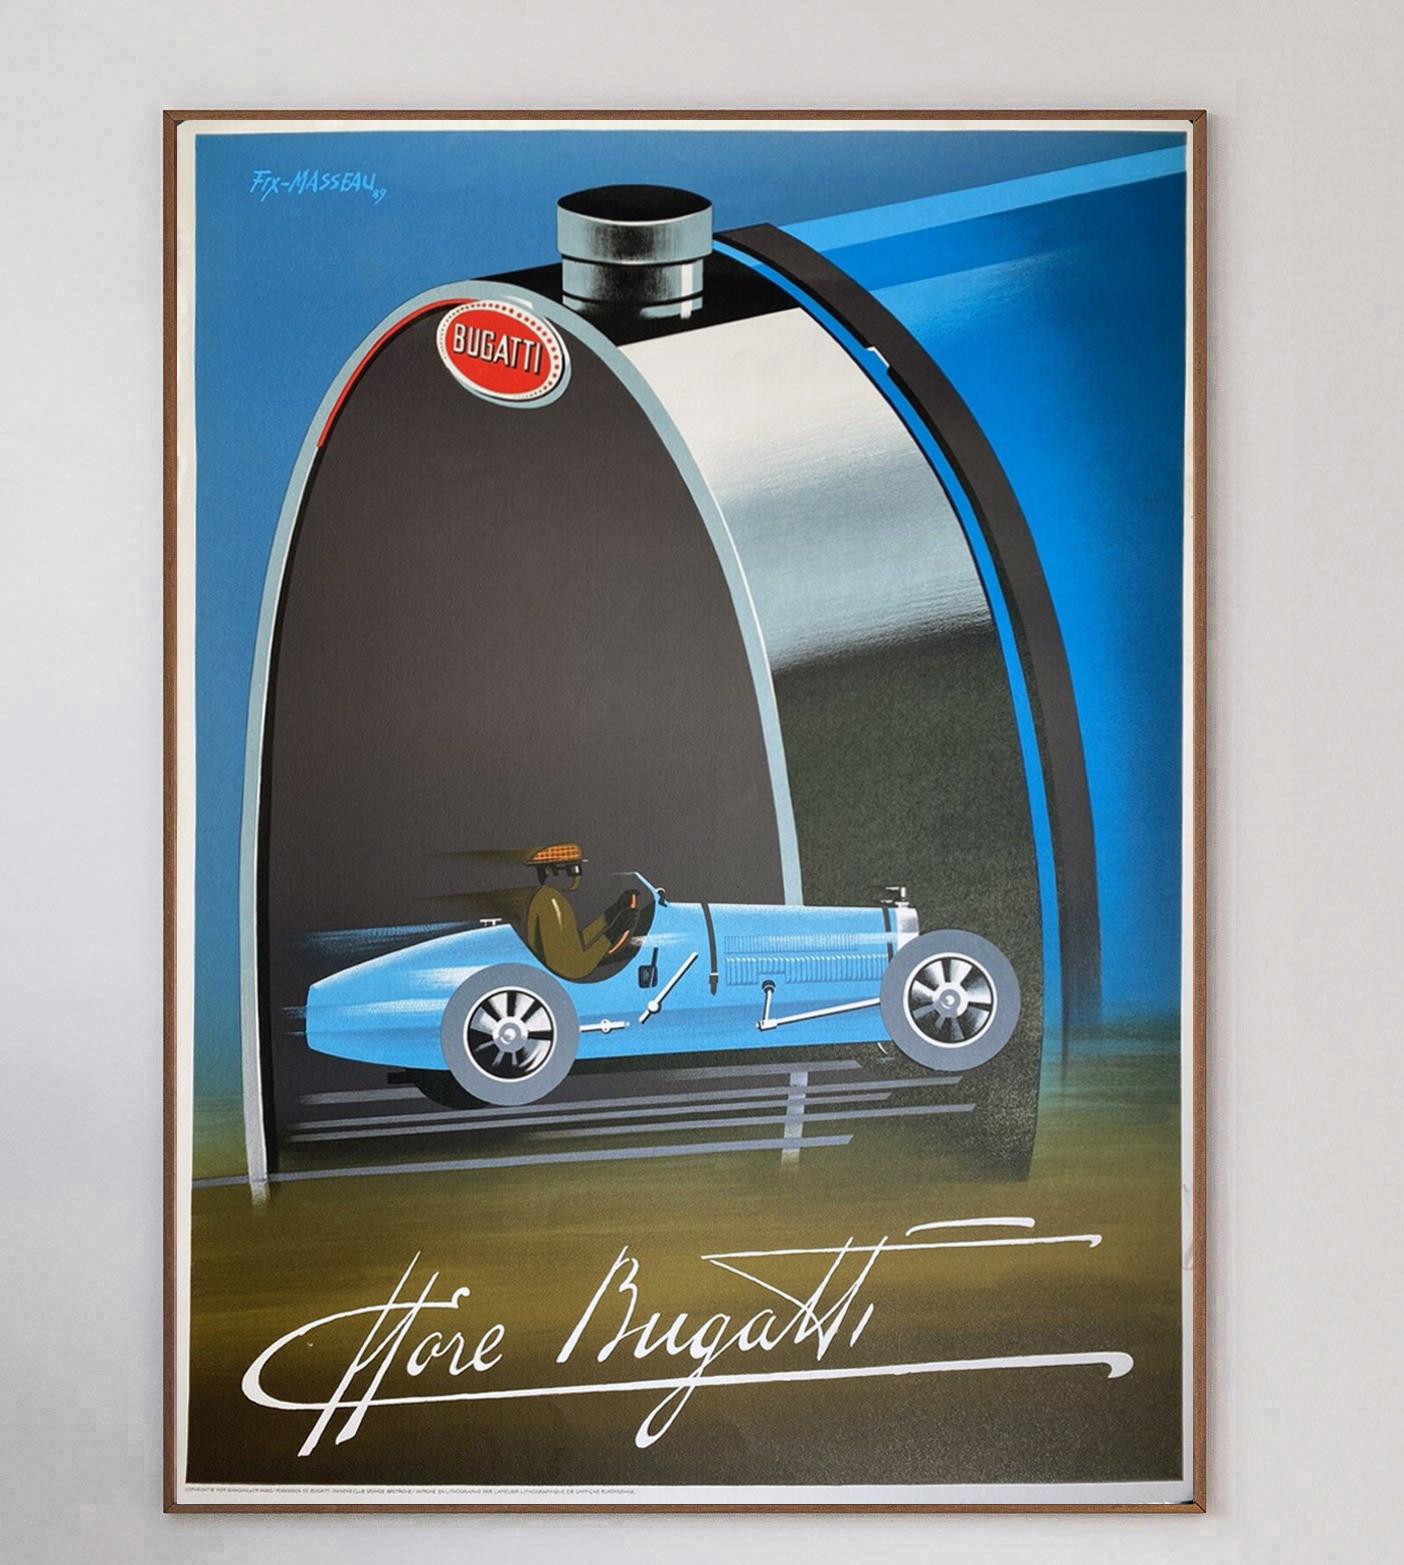 Wunderschönes Art-déco-Plakat von Fix-Masseau für Bugatti. Diese Steinlithographie wurde 1989 gedruckt und zeigt einen rasenden Bugatti, der in fantastischem Stil gefahren wird. Der deutsch-französische Hersteller von Hochleistungsfahrzeugen wurde